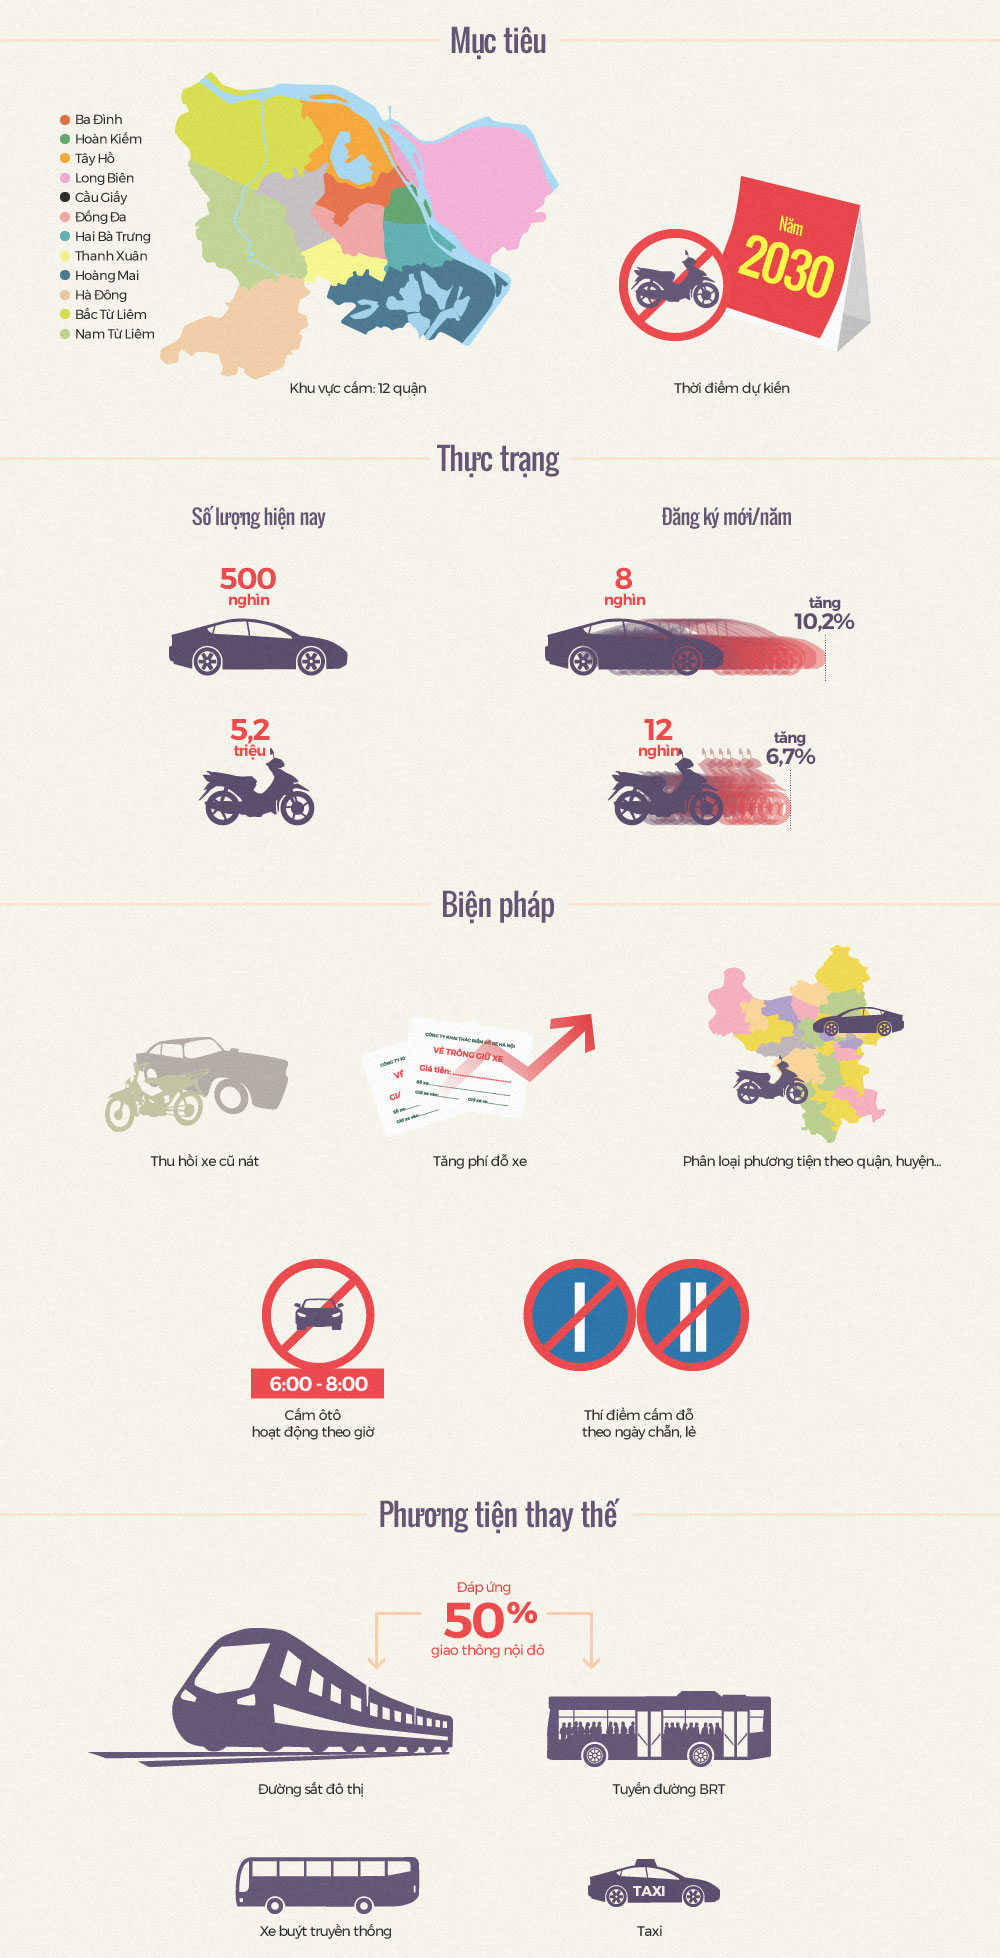 Hà Nội cấm xe máy vào năm 2030 như thế nào?